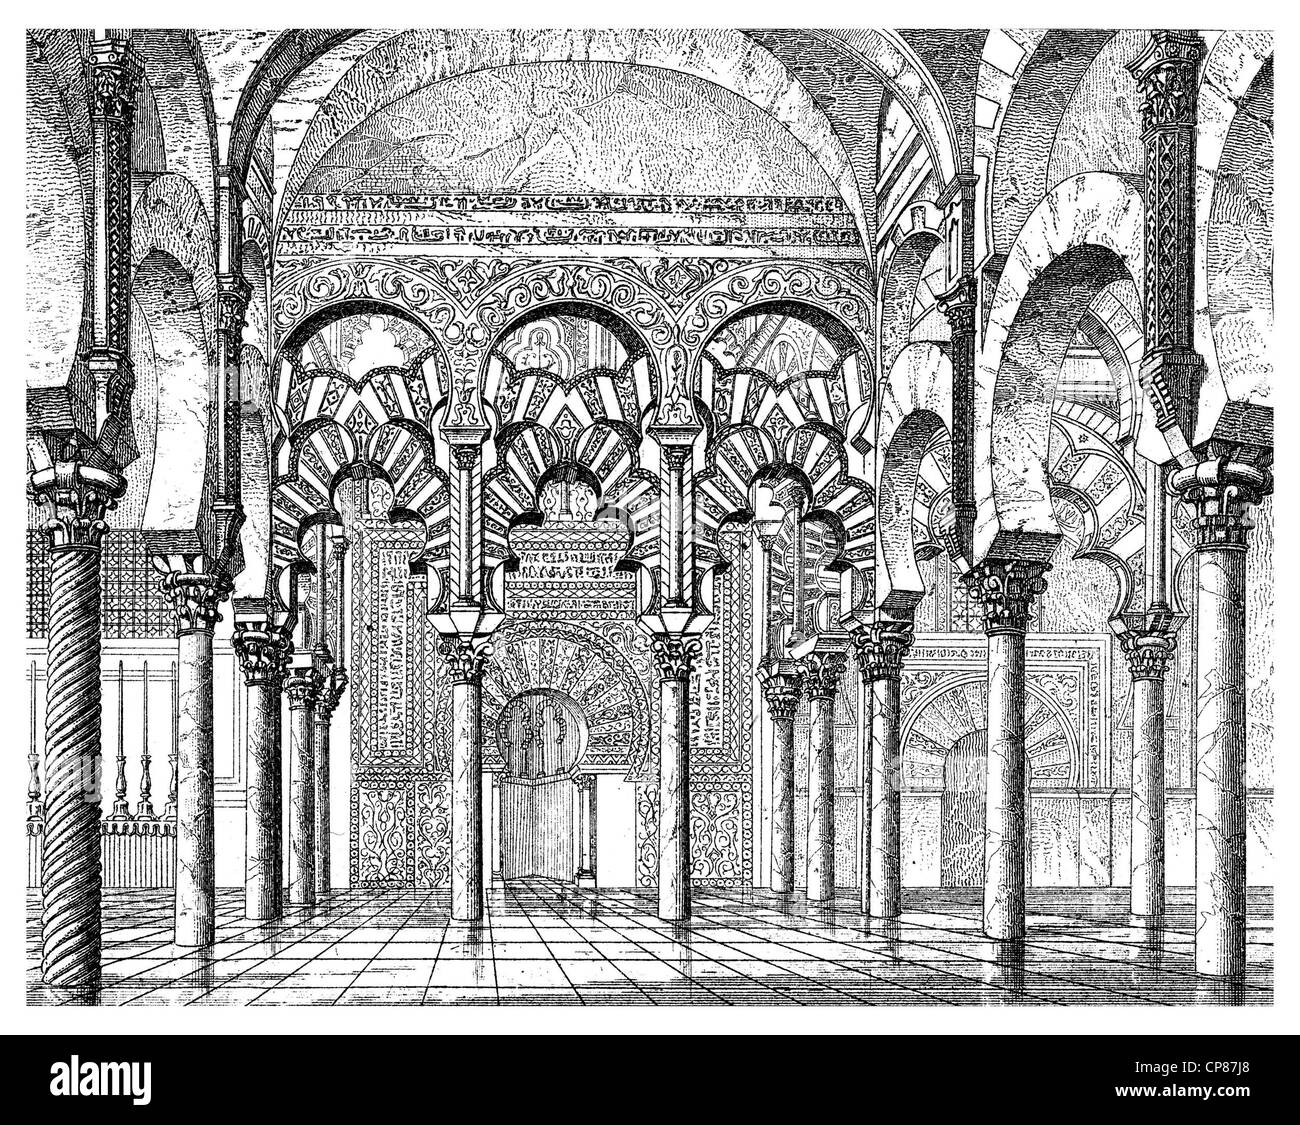 Mezquita-Catedral di Córdoba, Cattedrale cattolica romana, ex moschea al-Dschāmiʿ al-kabīr, Dschāmiʿ Qurṭuba, Cathedralâ Foto Stock